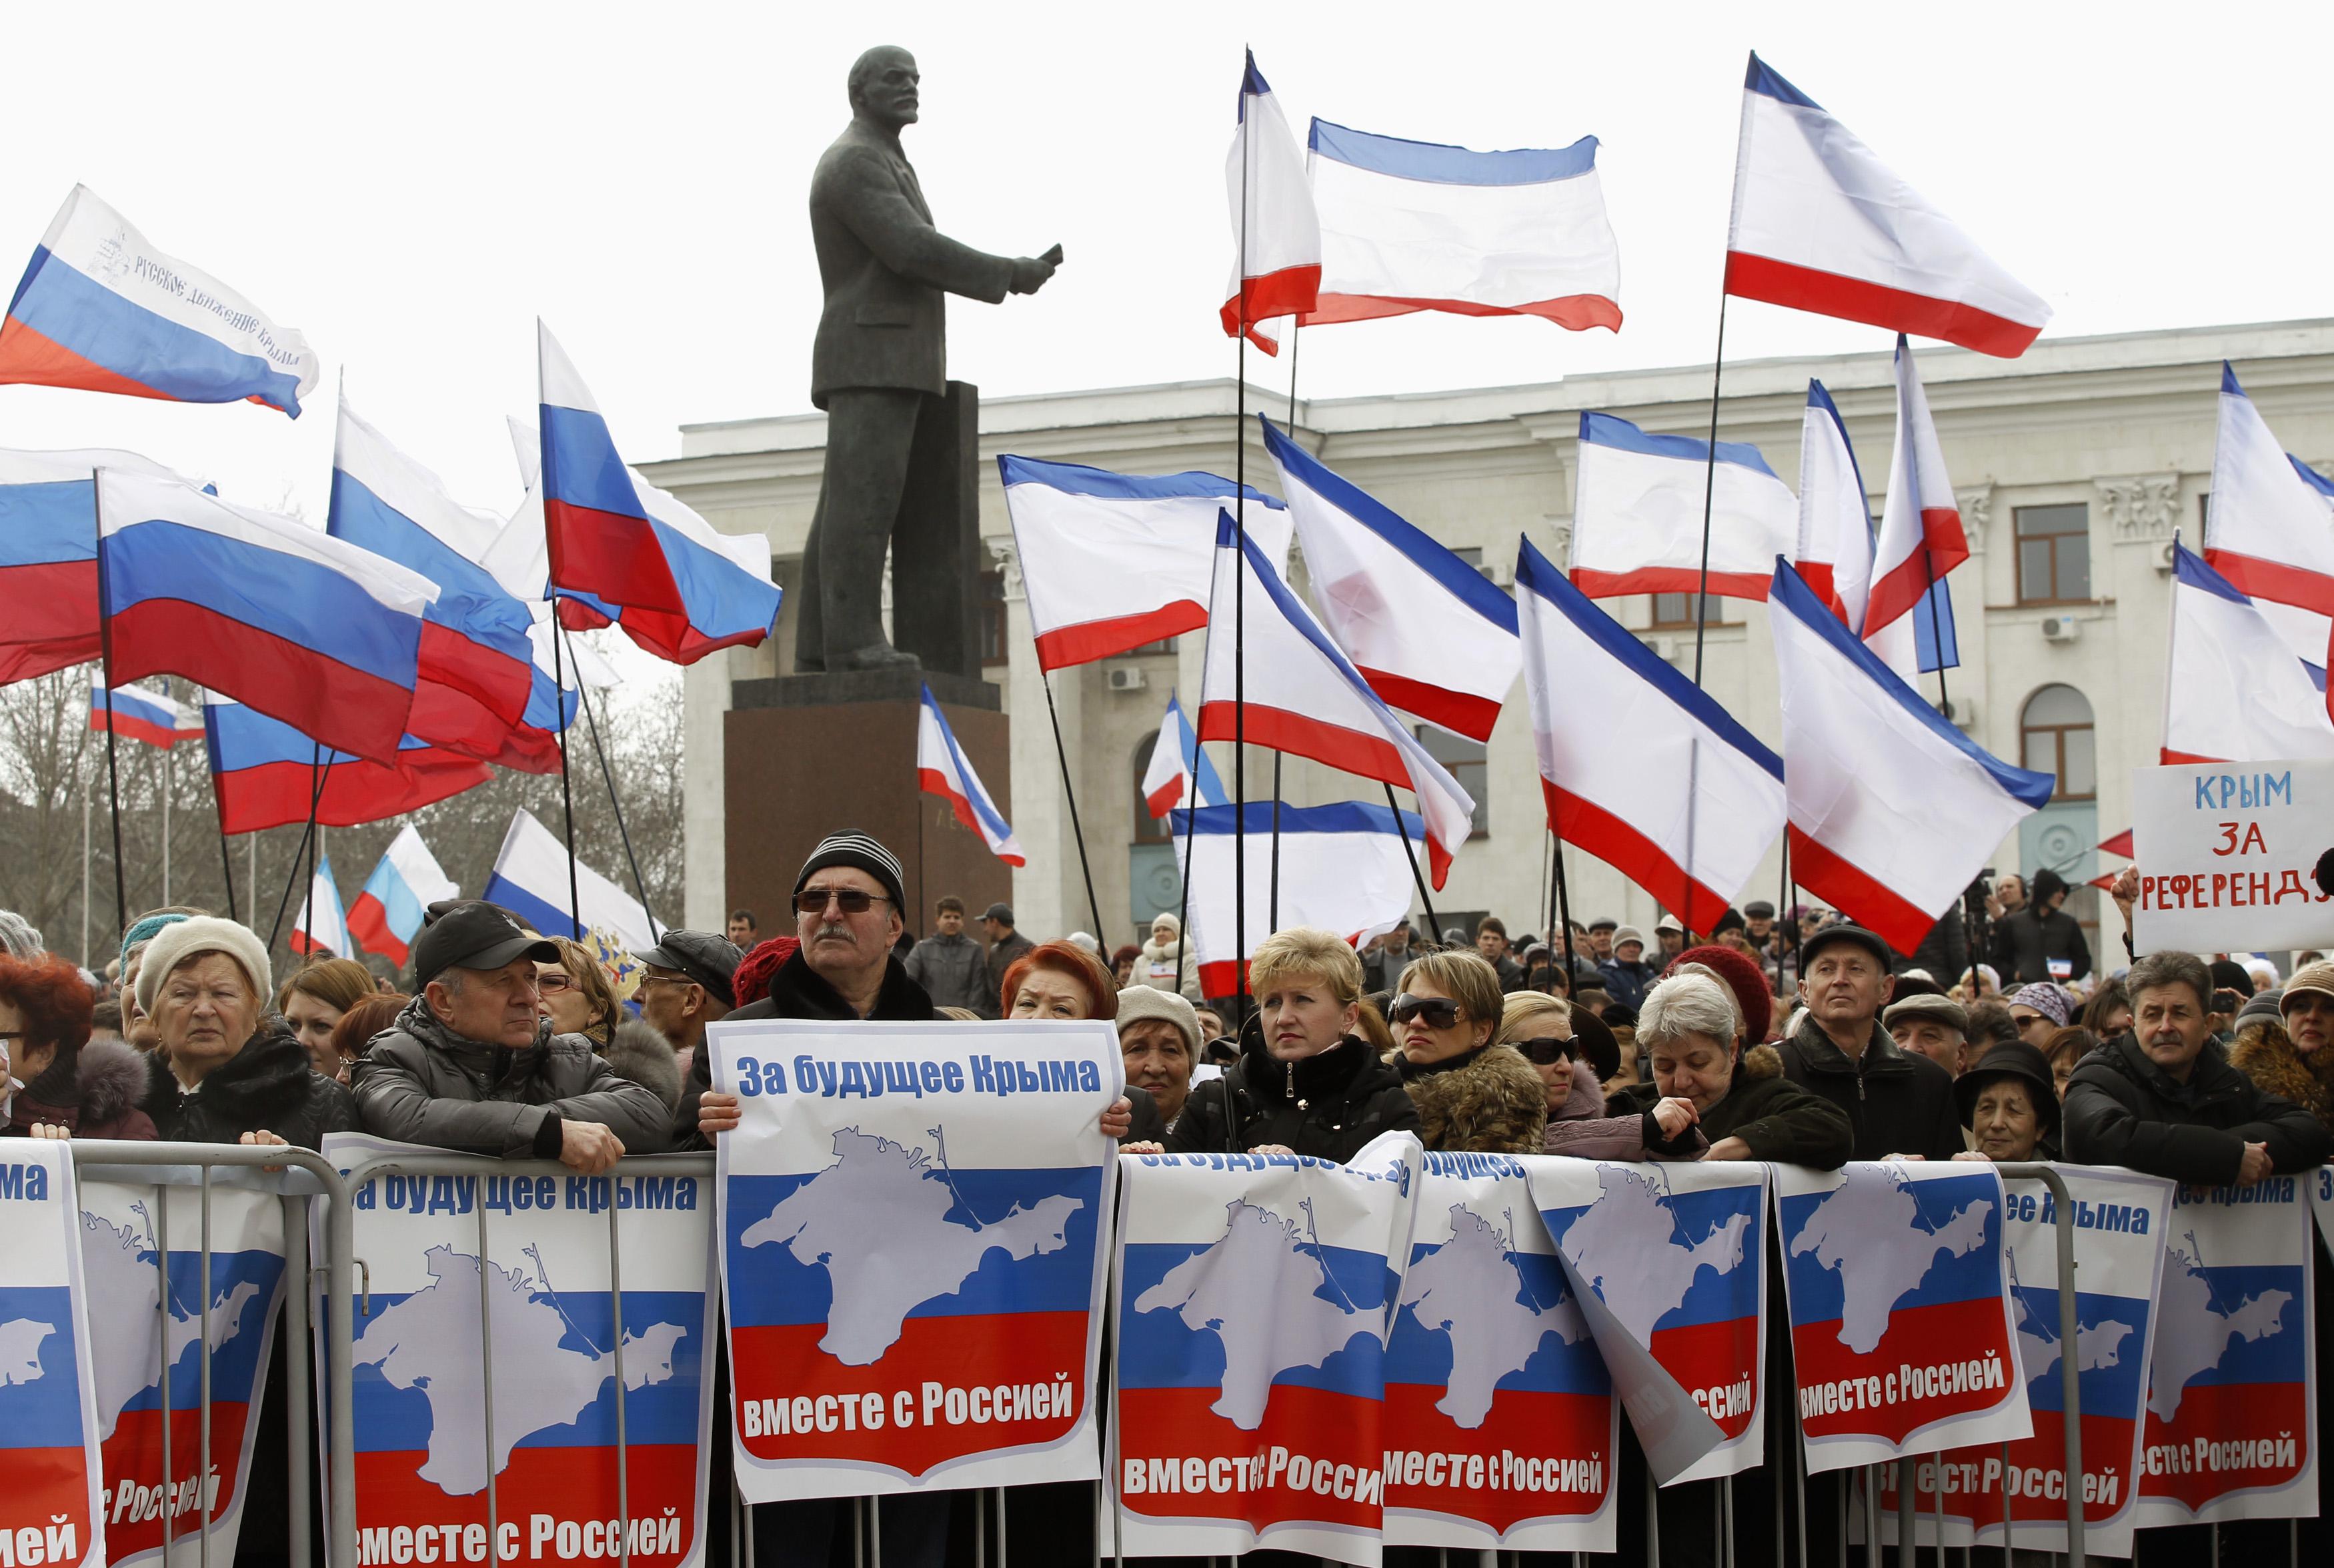 Σε εξέλιξη και χωρίς εντάσεις το δημοψήφισμα για την ένωση Κριμαίας με Ρωσία